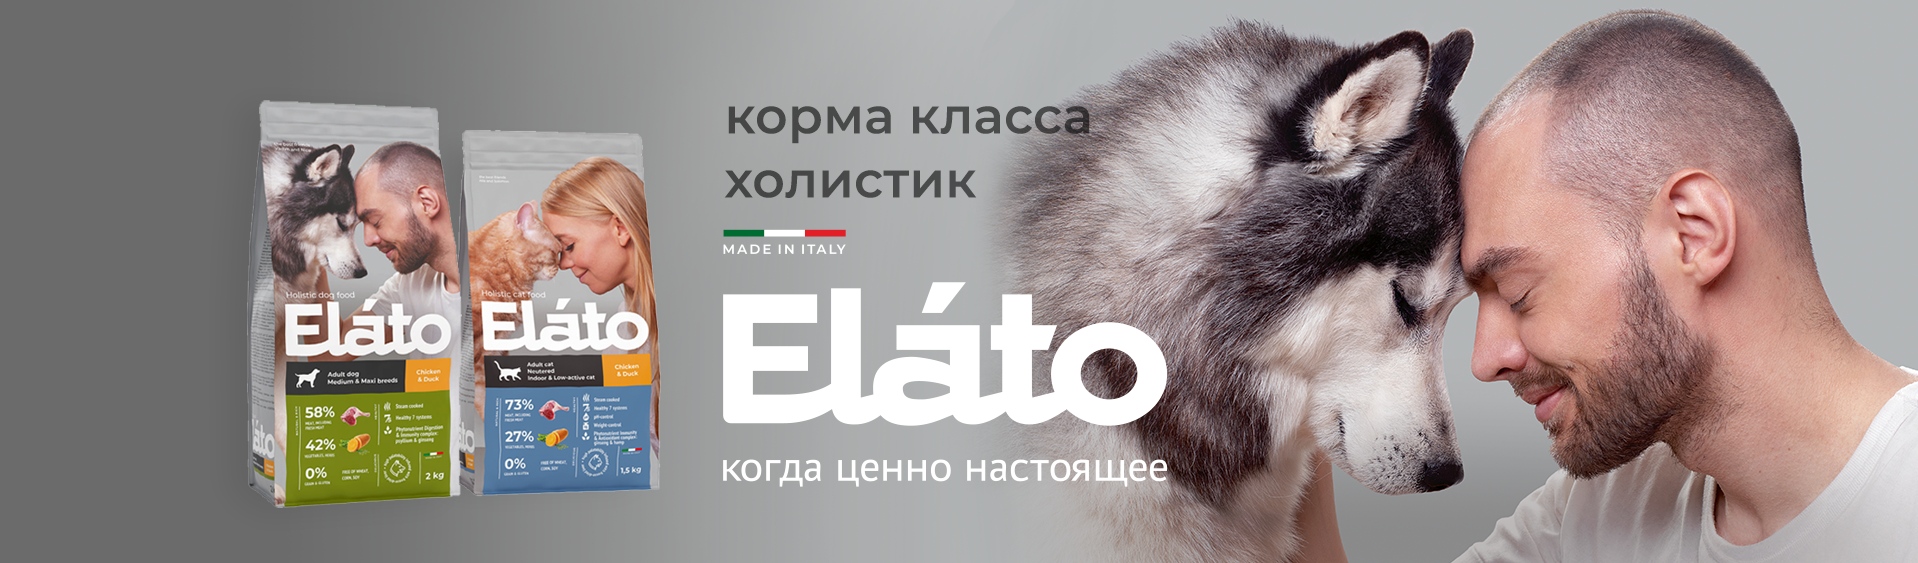 купить Холистик корма Elato для кошек и собак с бесплатной доставкой в Калининграде